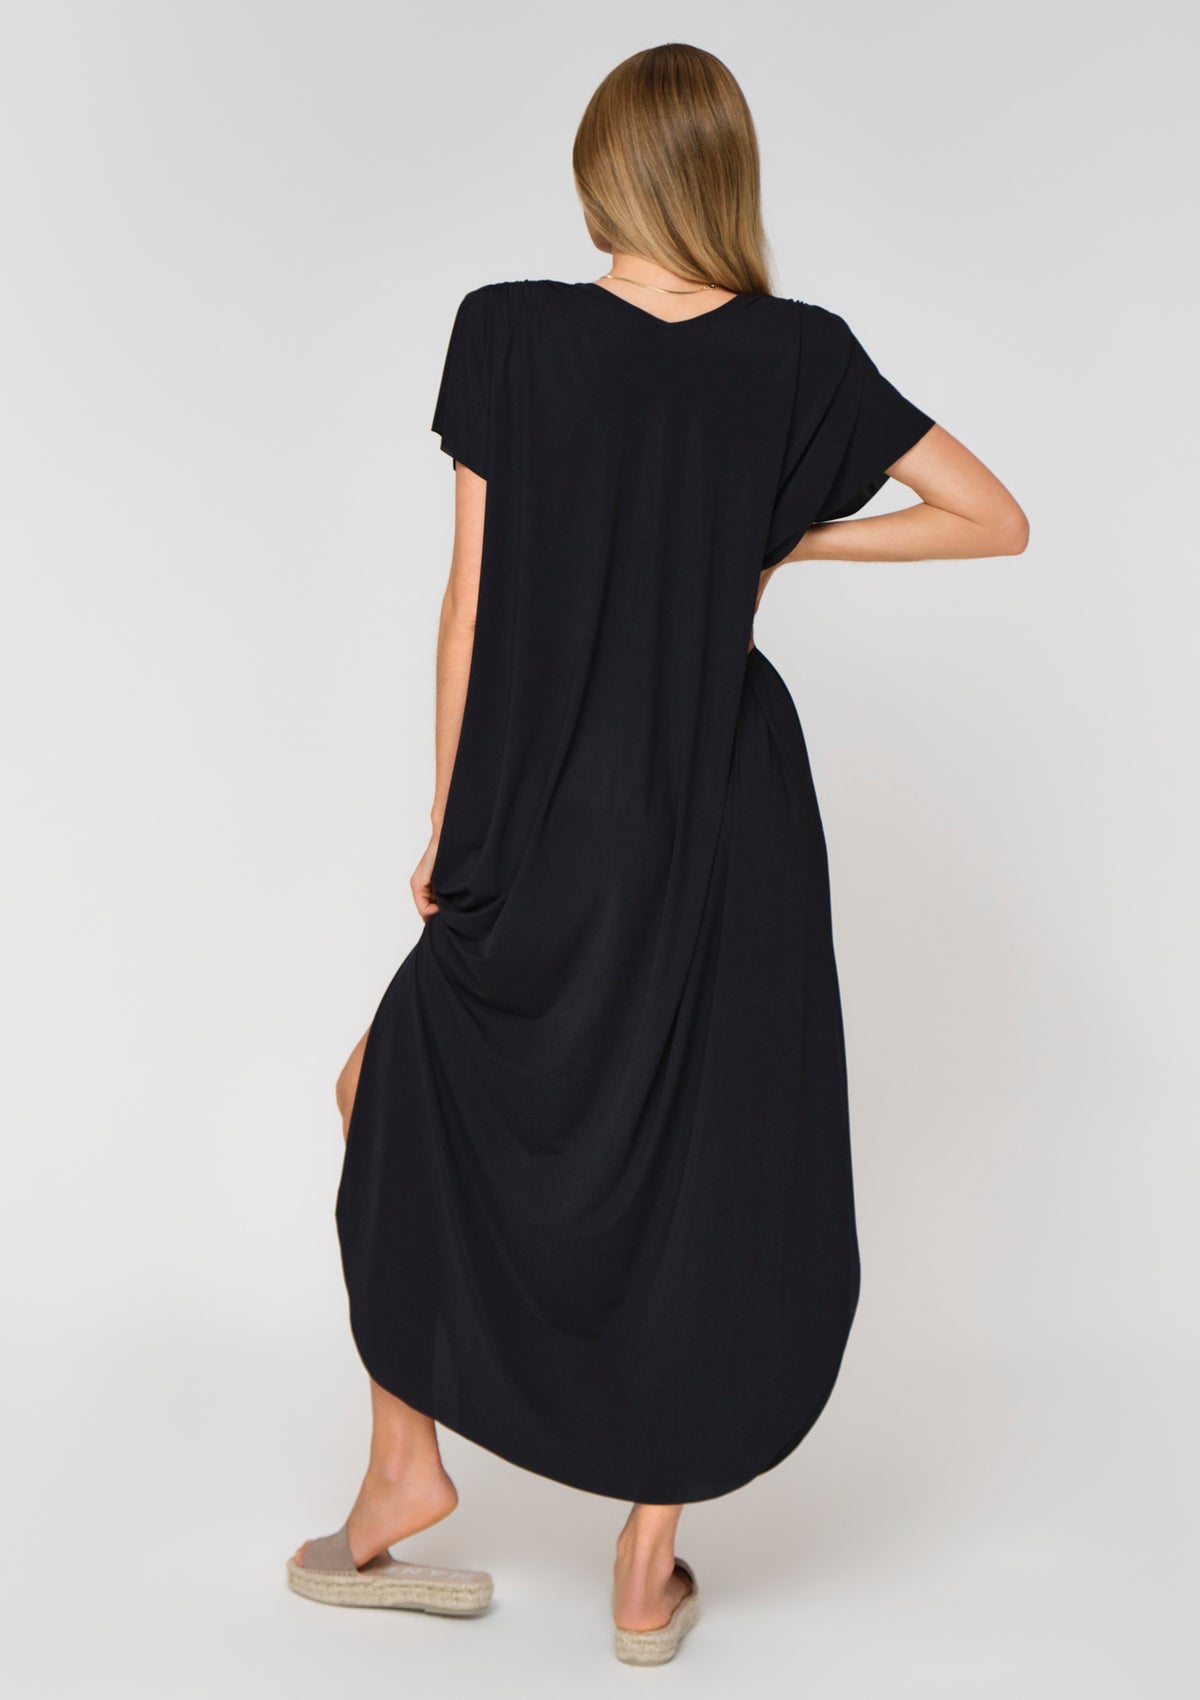 VENUS Kleid schwarz